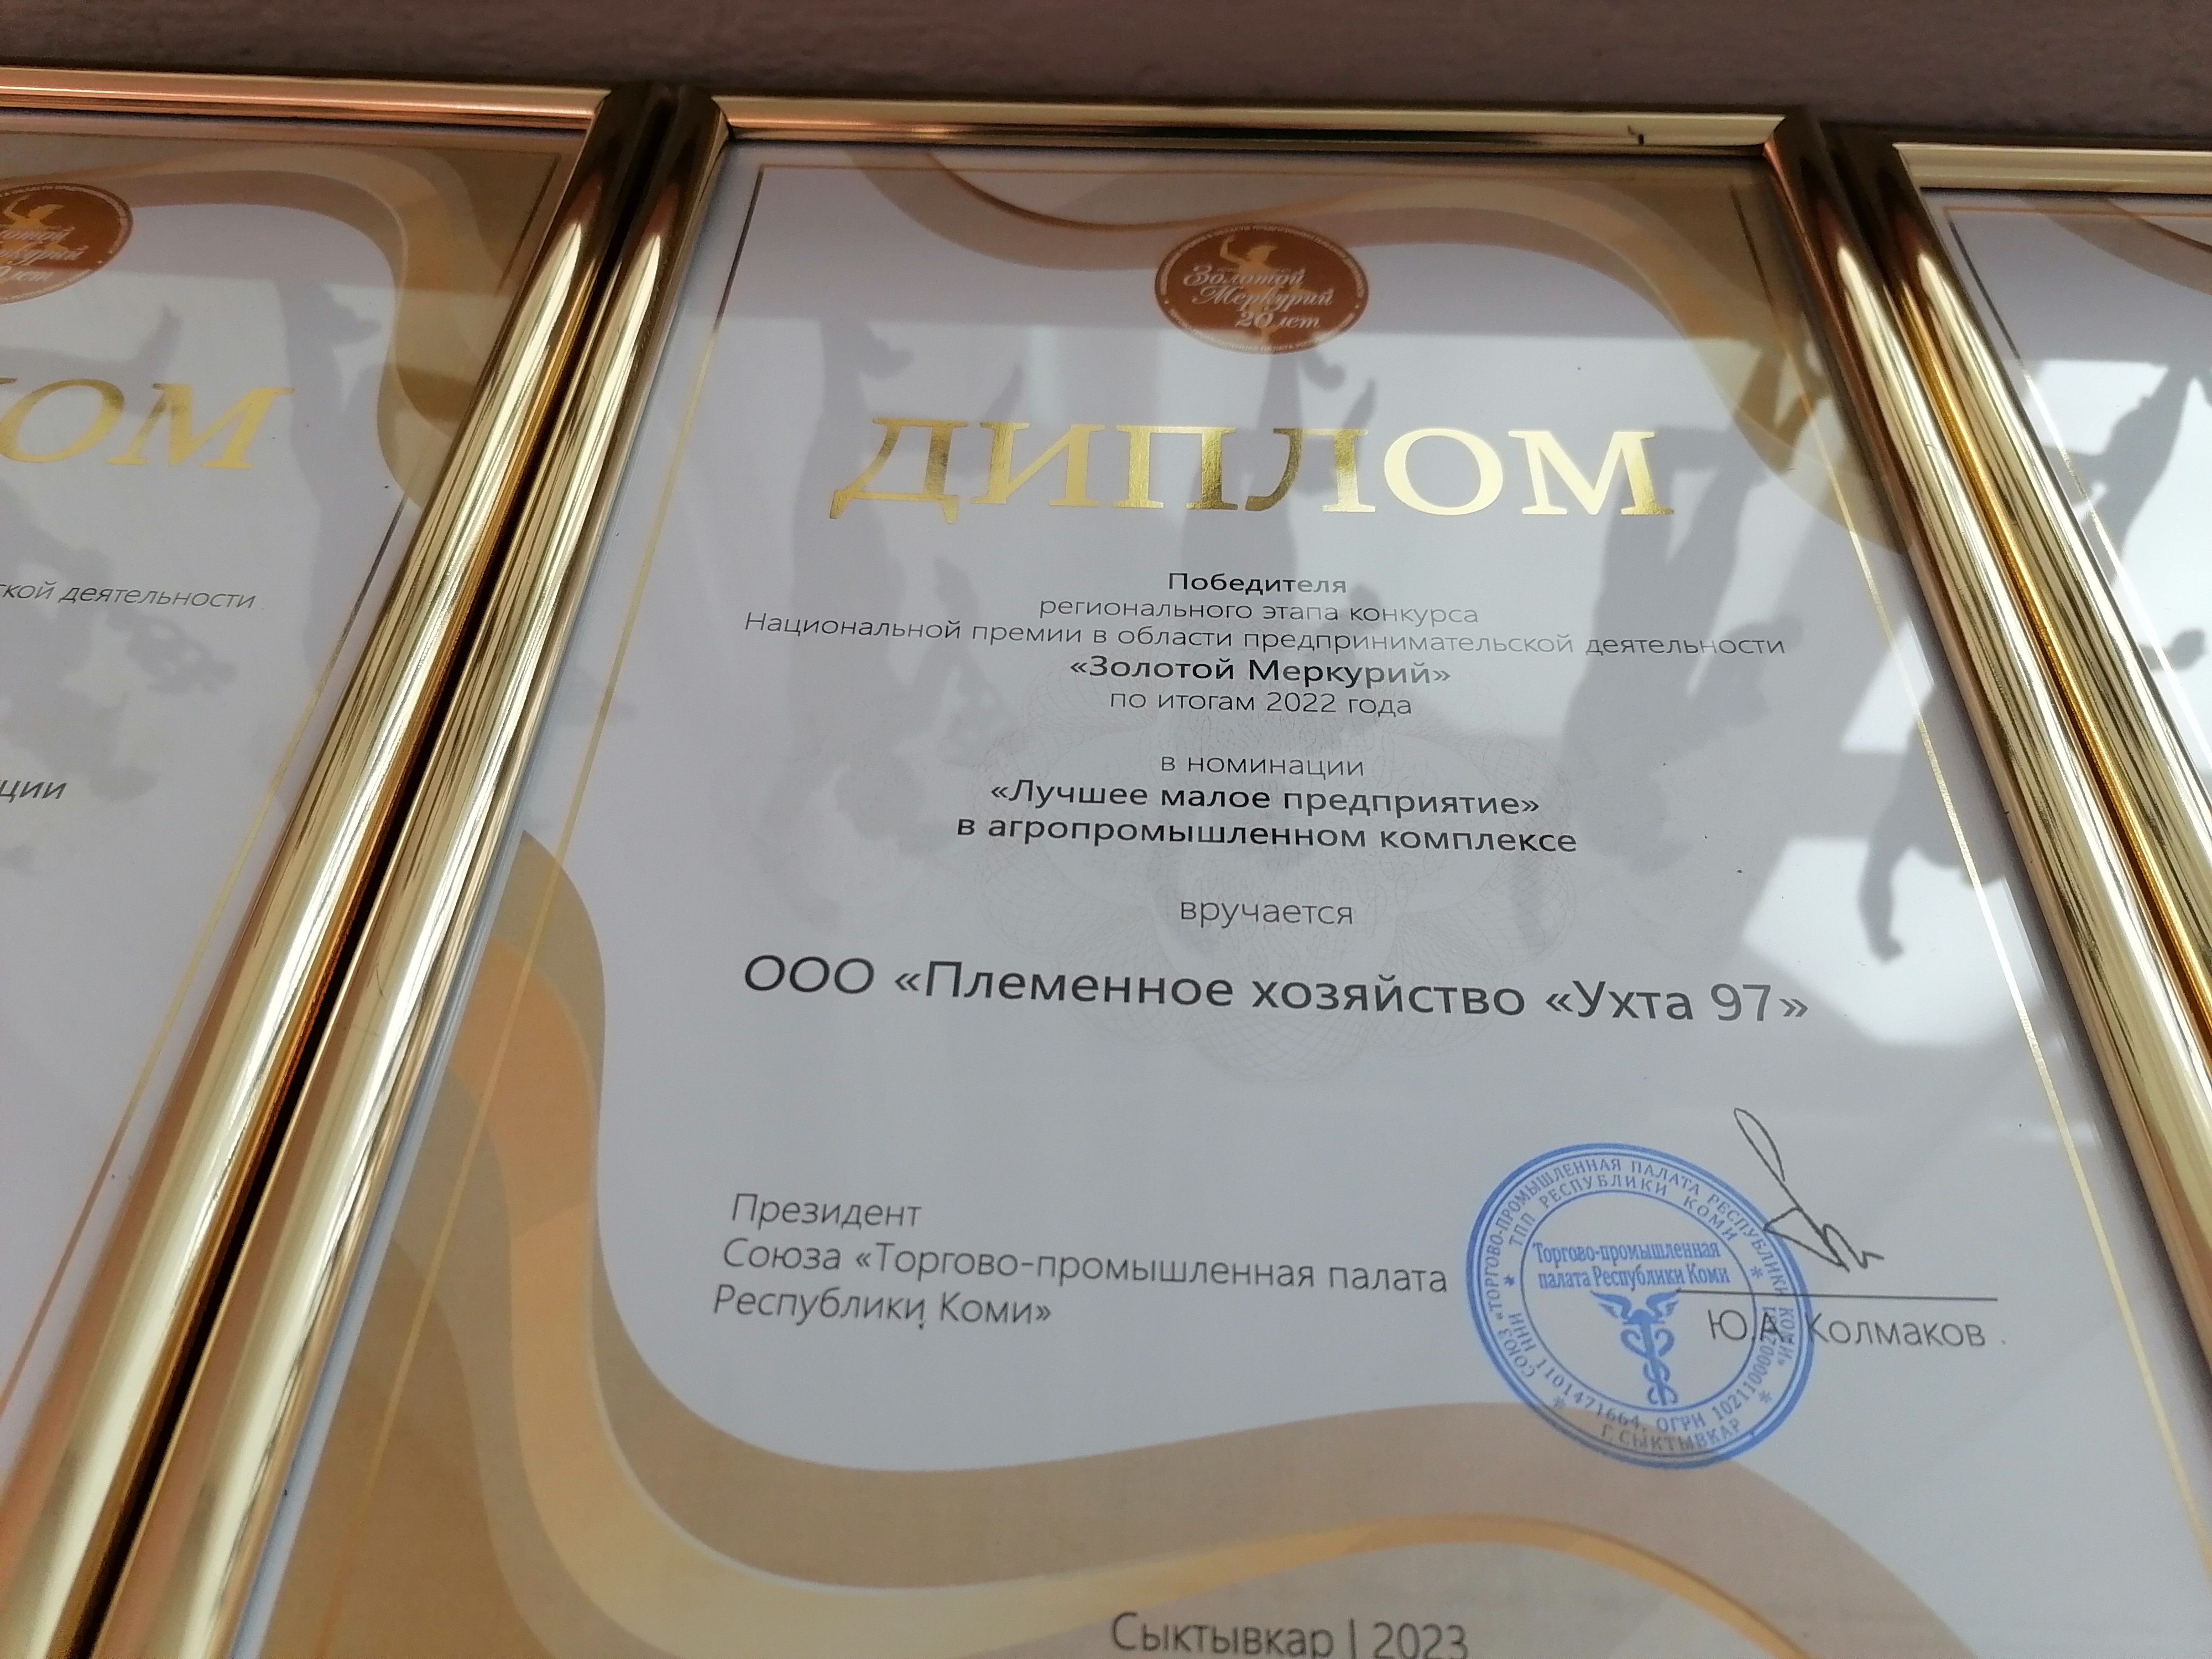 Два предприятия из Коми вошли в число номинантов федерального этапа конкурса «Золотой Меркурий»